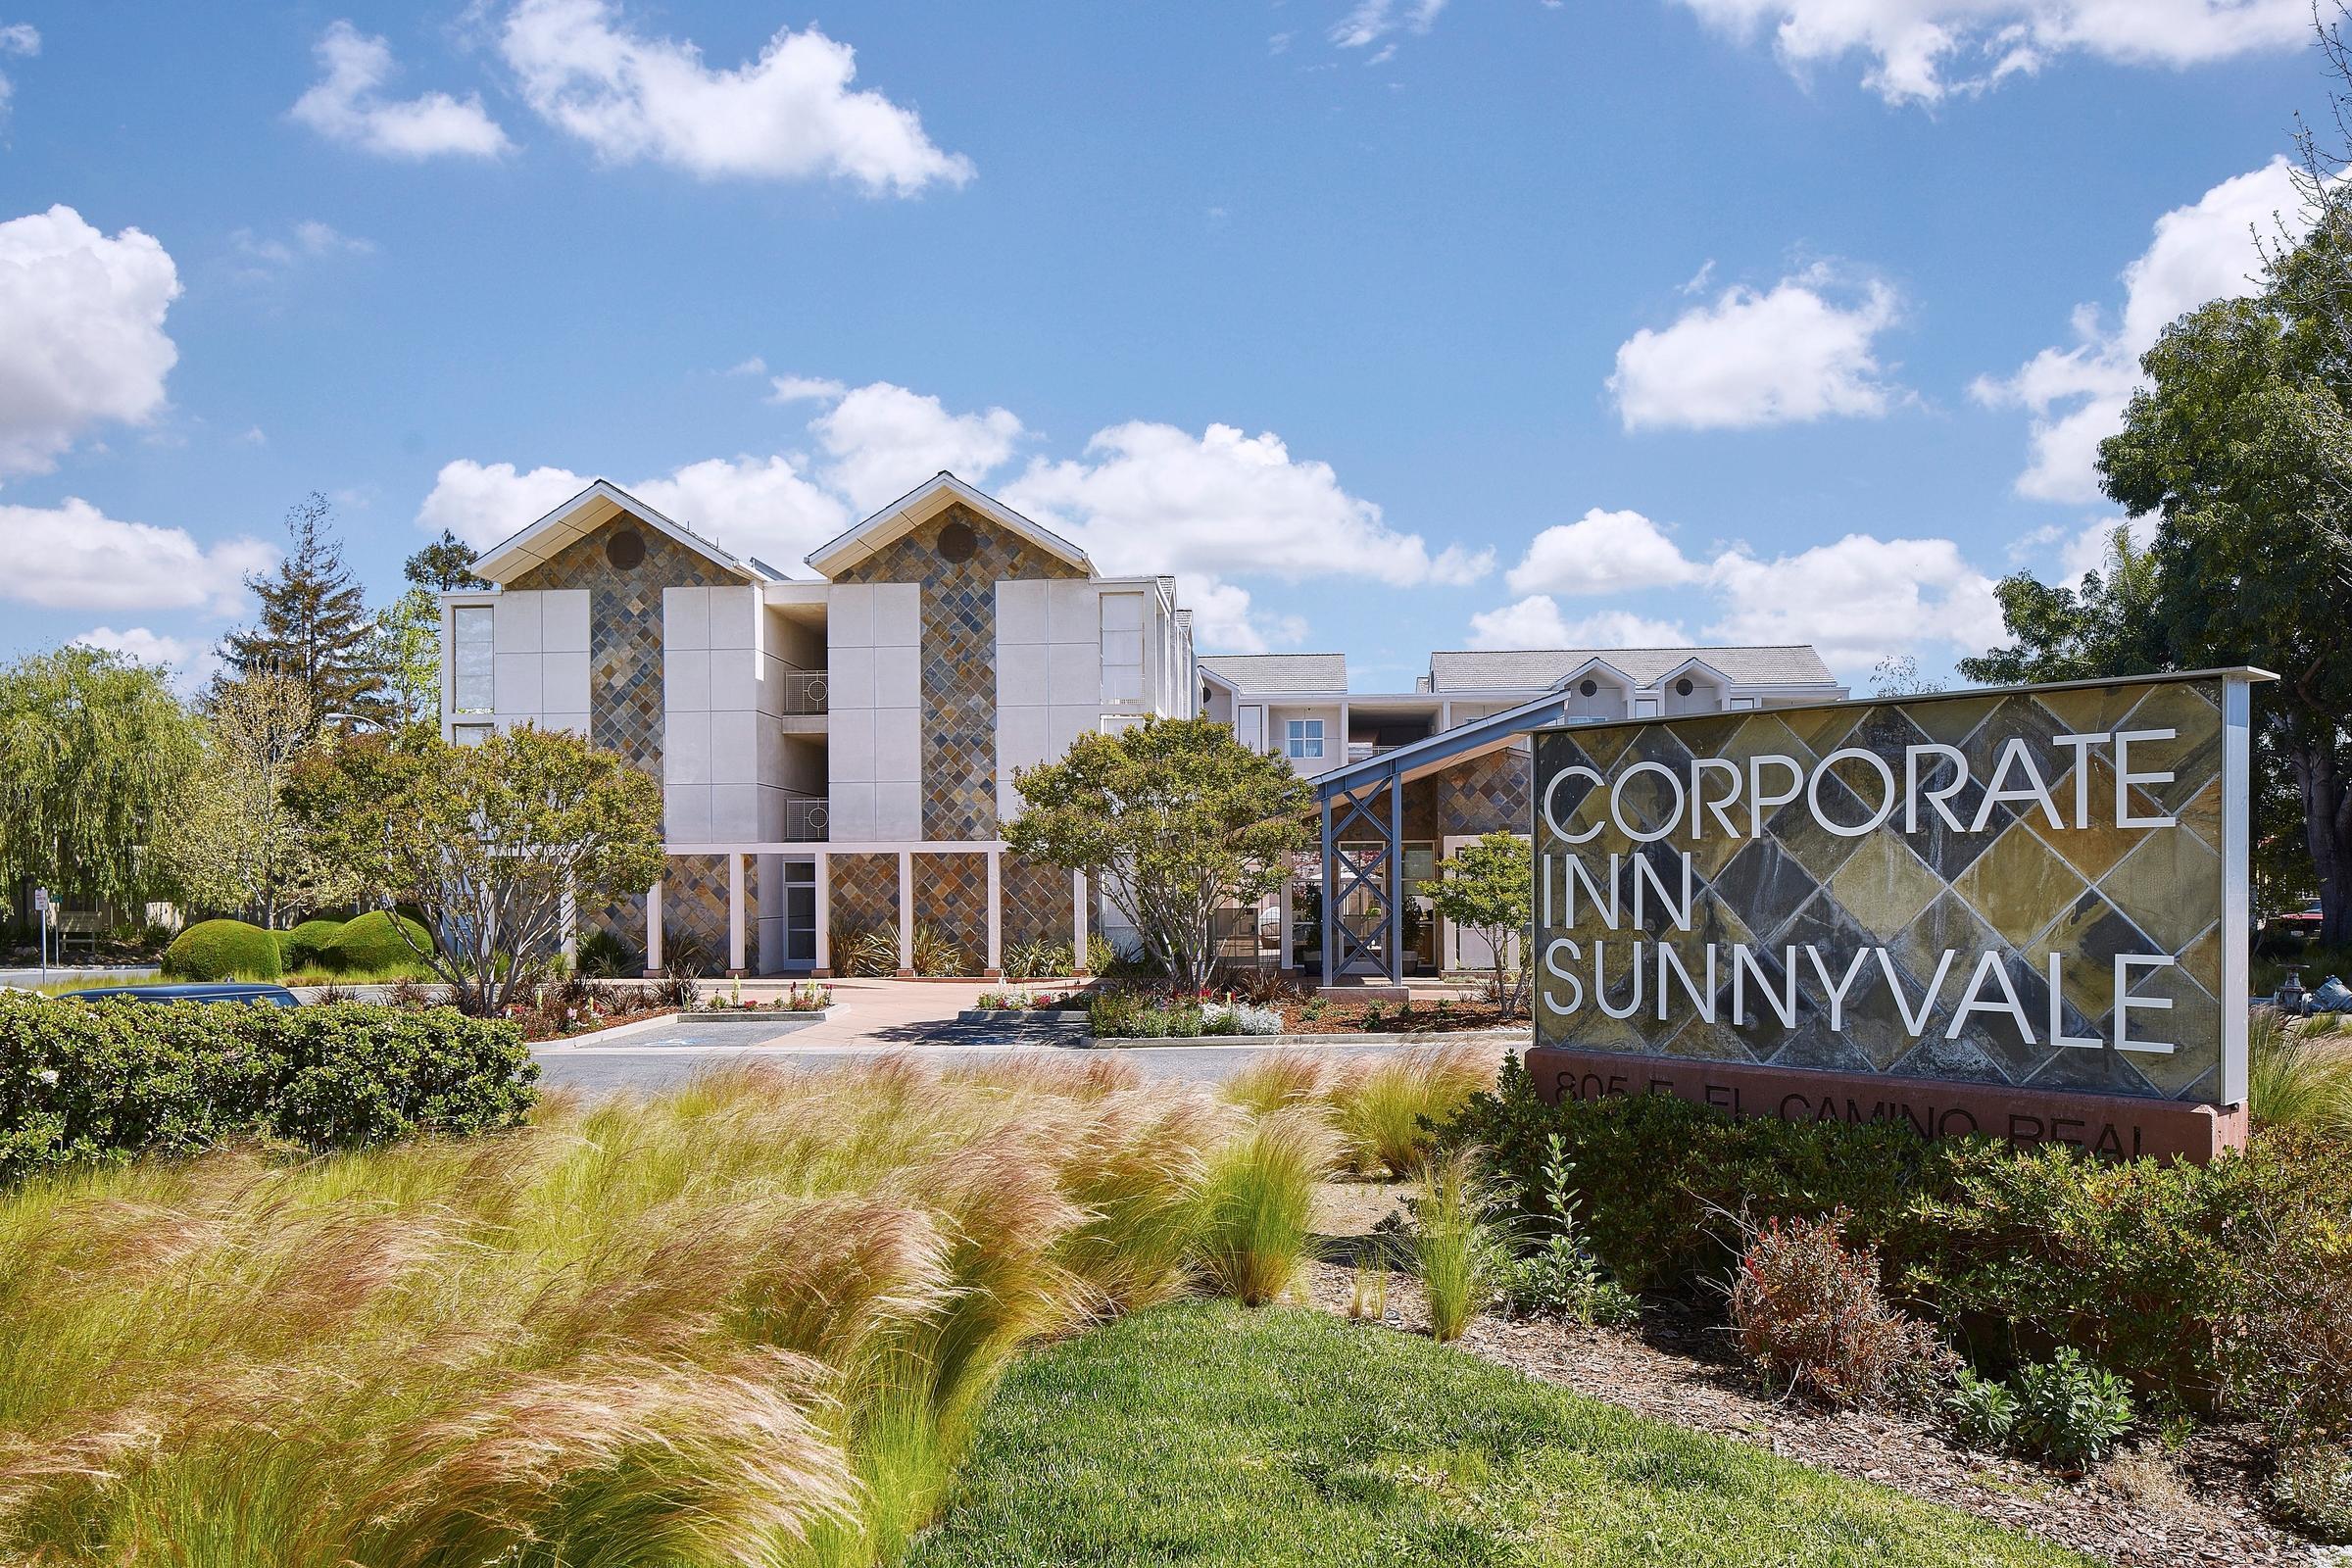 Photo of Corporate Inn Sunnyvale, Sunnyvale, CA